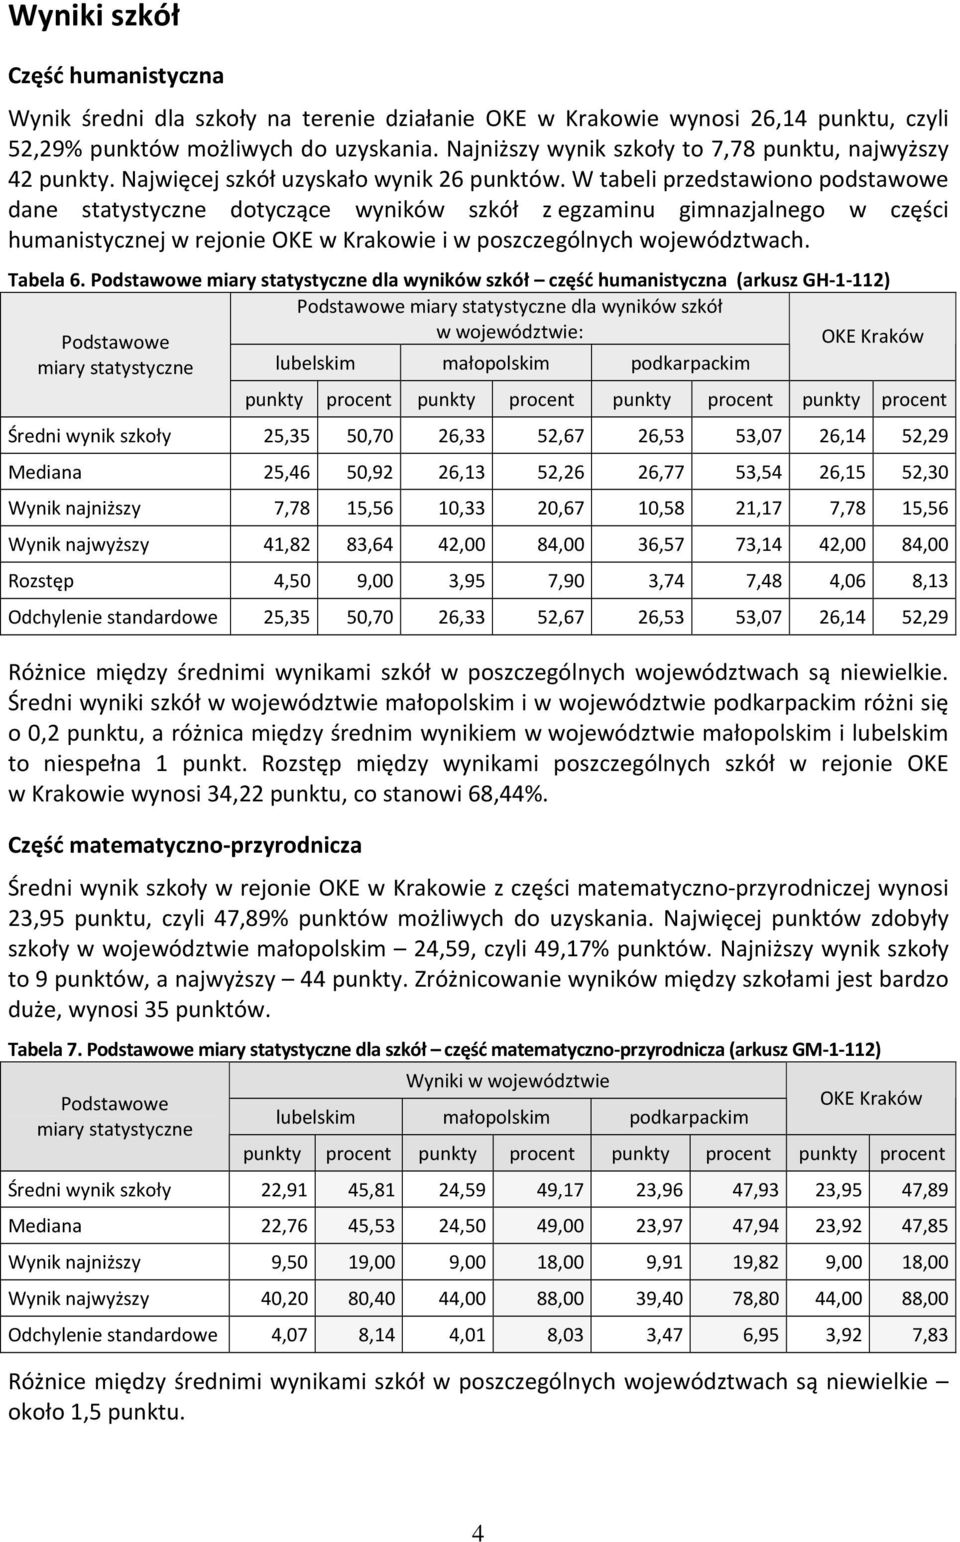 W tabeli przedstawiono podstawowe dane statystyczne dotyczące wyników szkół z egzaminu gimnazjalnego w części humanistycznej w rejonie OKE w Krakowie i w poszczególnych województwach. Tabela 6.